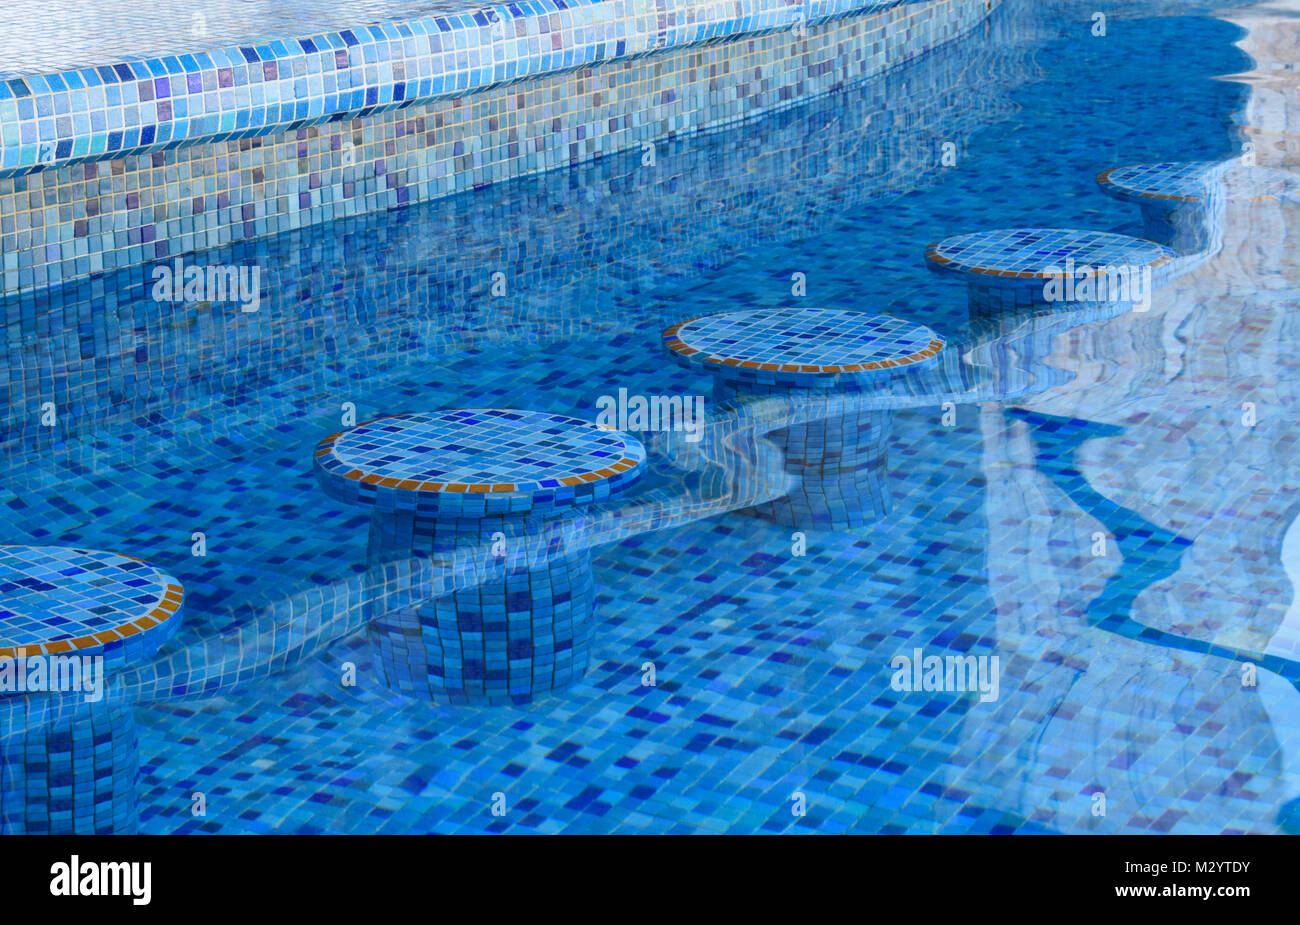 Taburetes de bar piscina fotografías e imágenes de alta resolución - Alamy